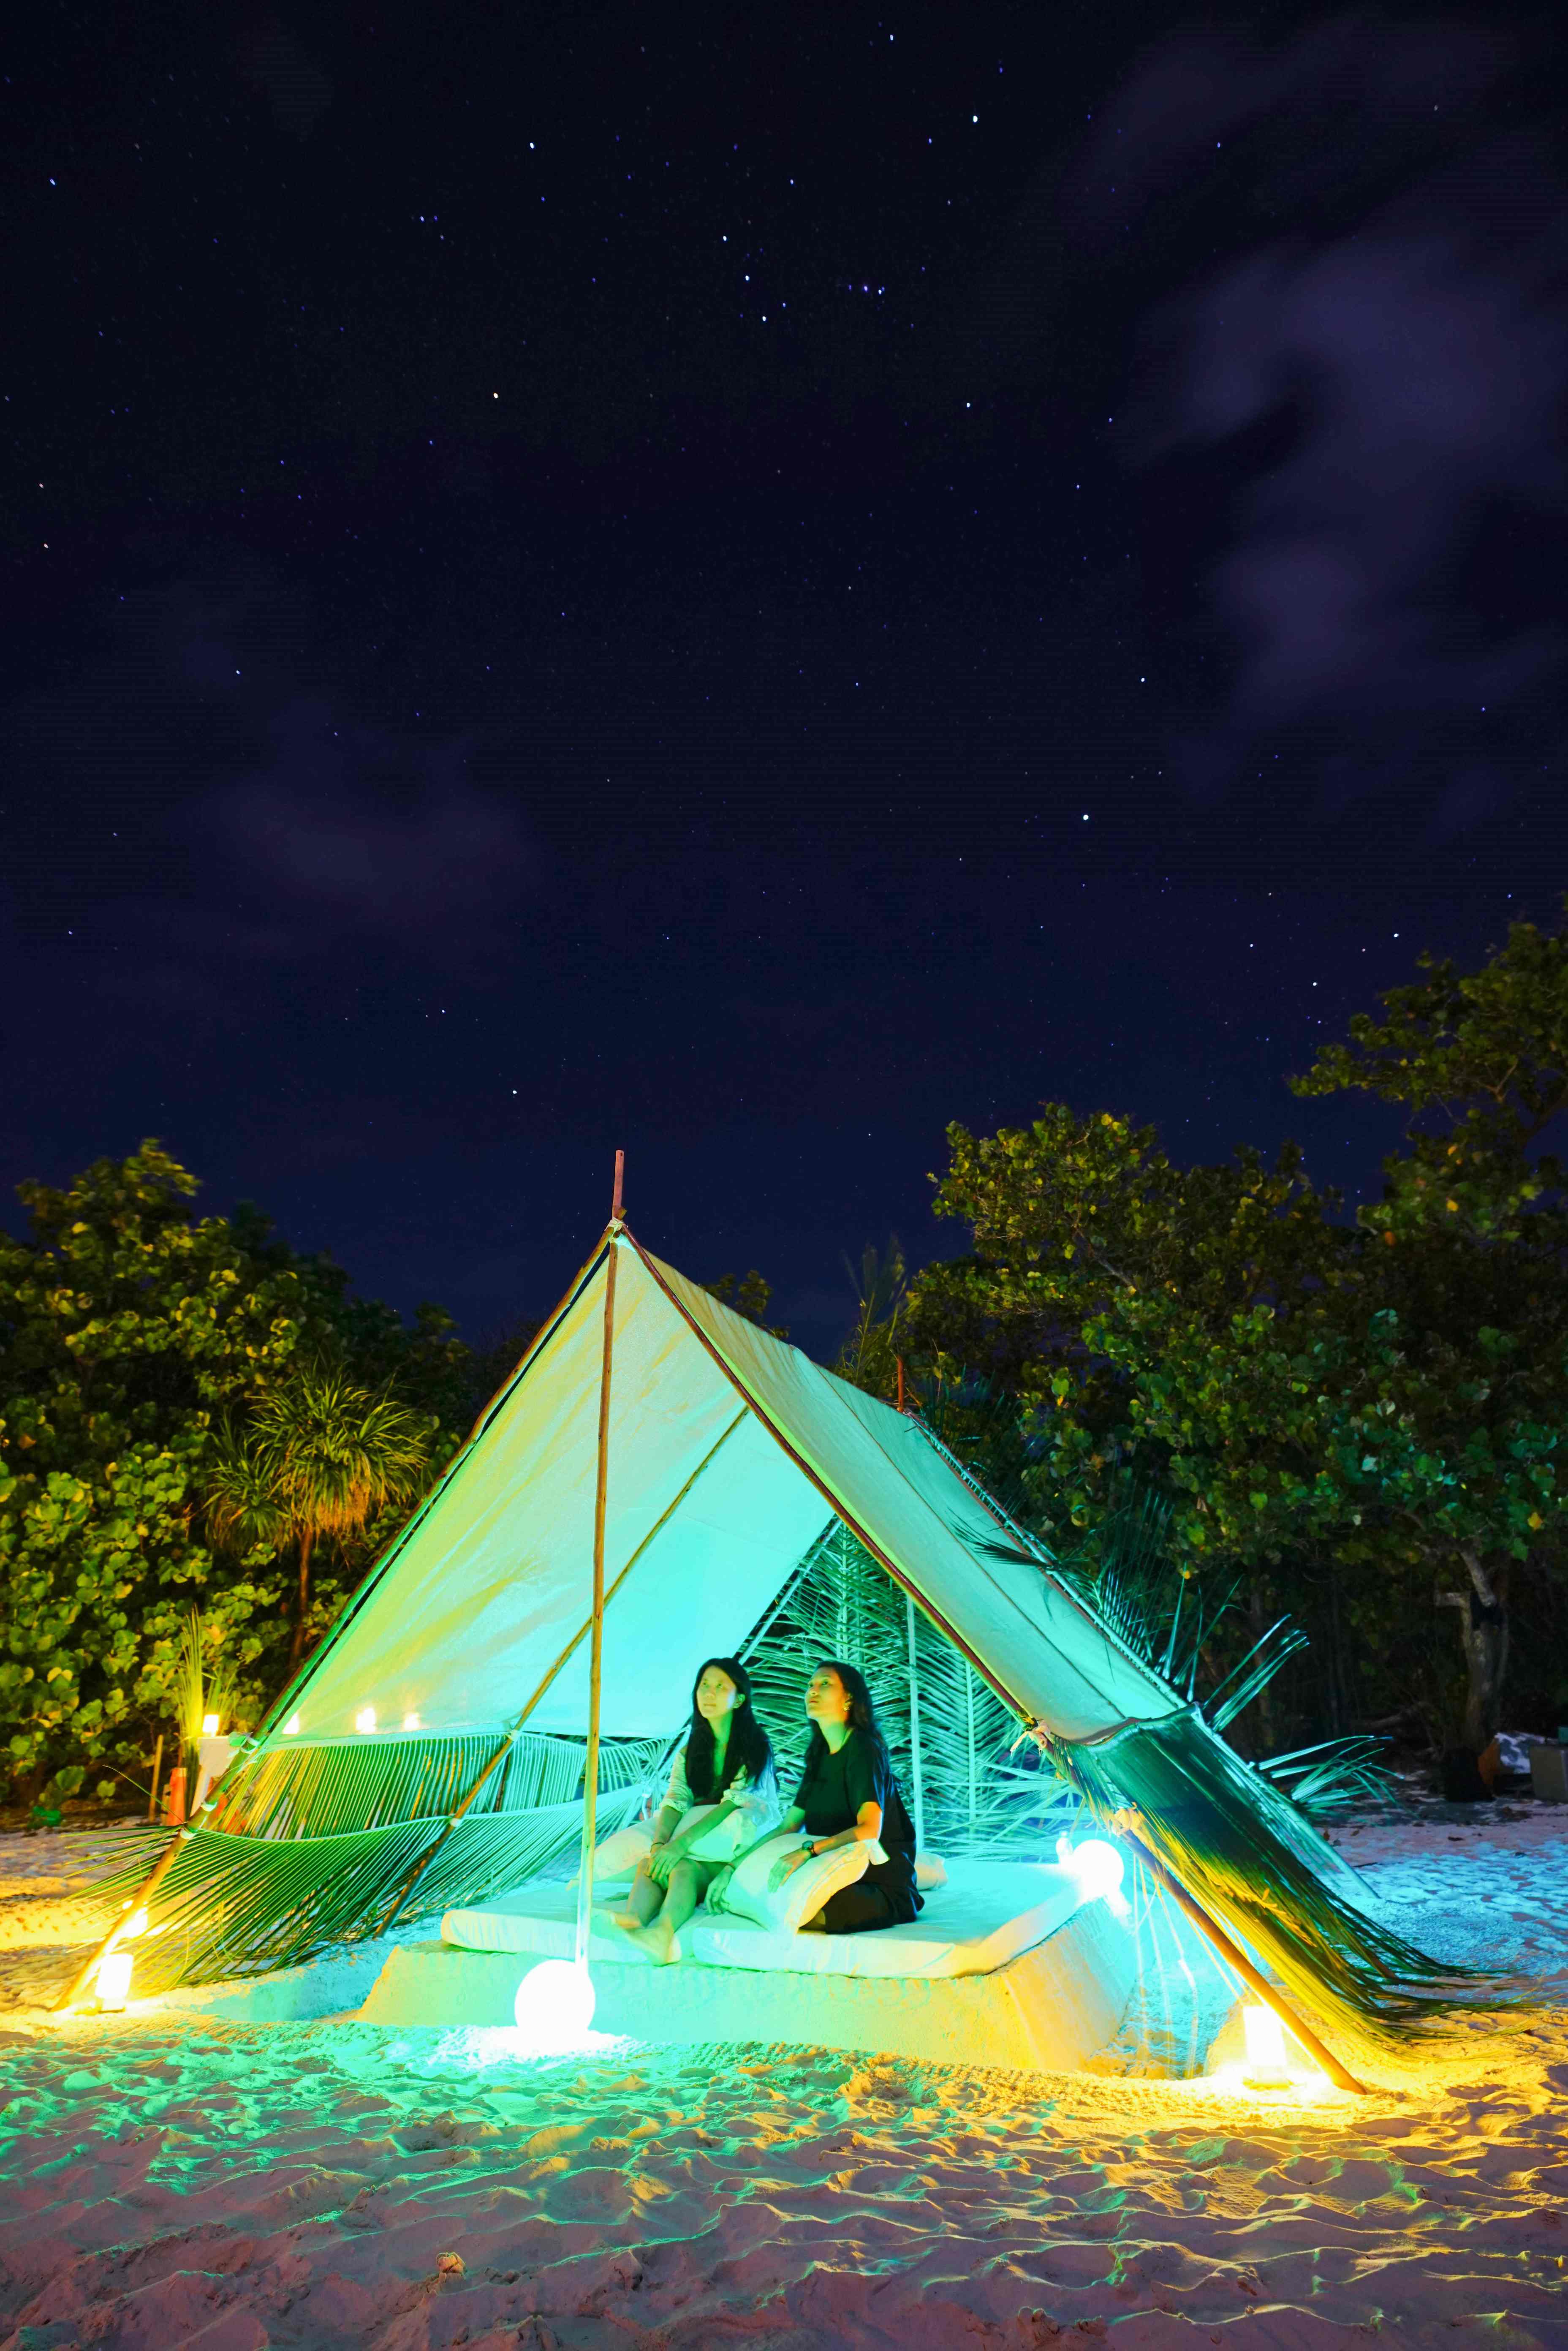 馬爾地夫。提納度Thinadhoo居民島的新奇旅程 – 夜宿浪漫 無人島 (下)